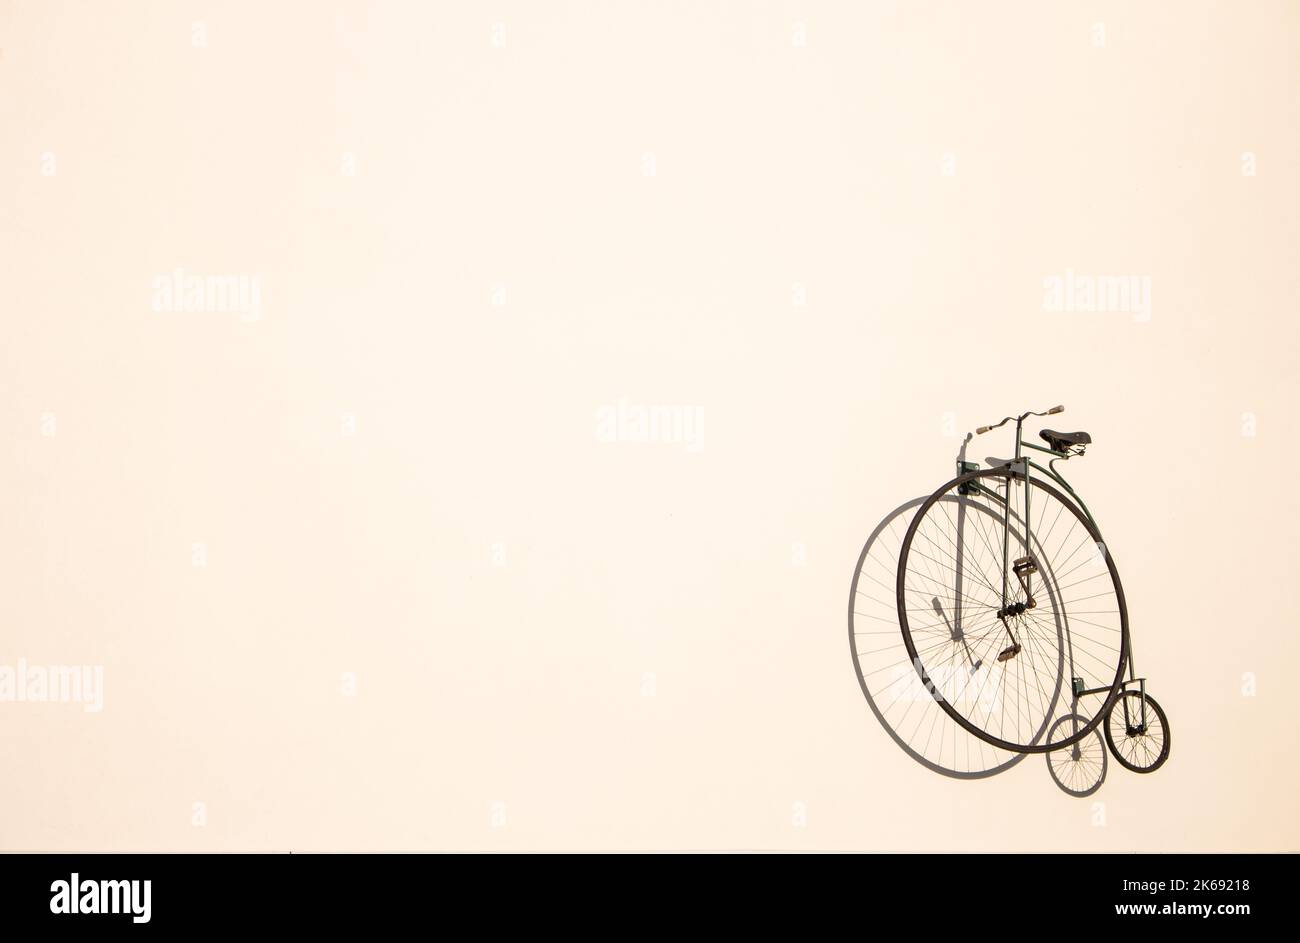 Silhouette de vélo rétro sur le mur avec espace pour copier. Concept de transport. Vieux vélo avec grande roue. Concept de minimalisme. Banque D'Images